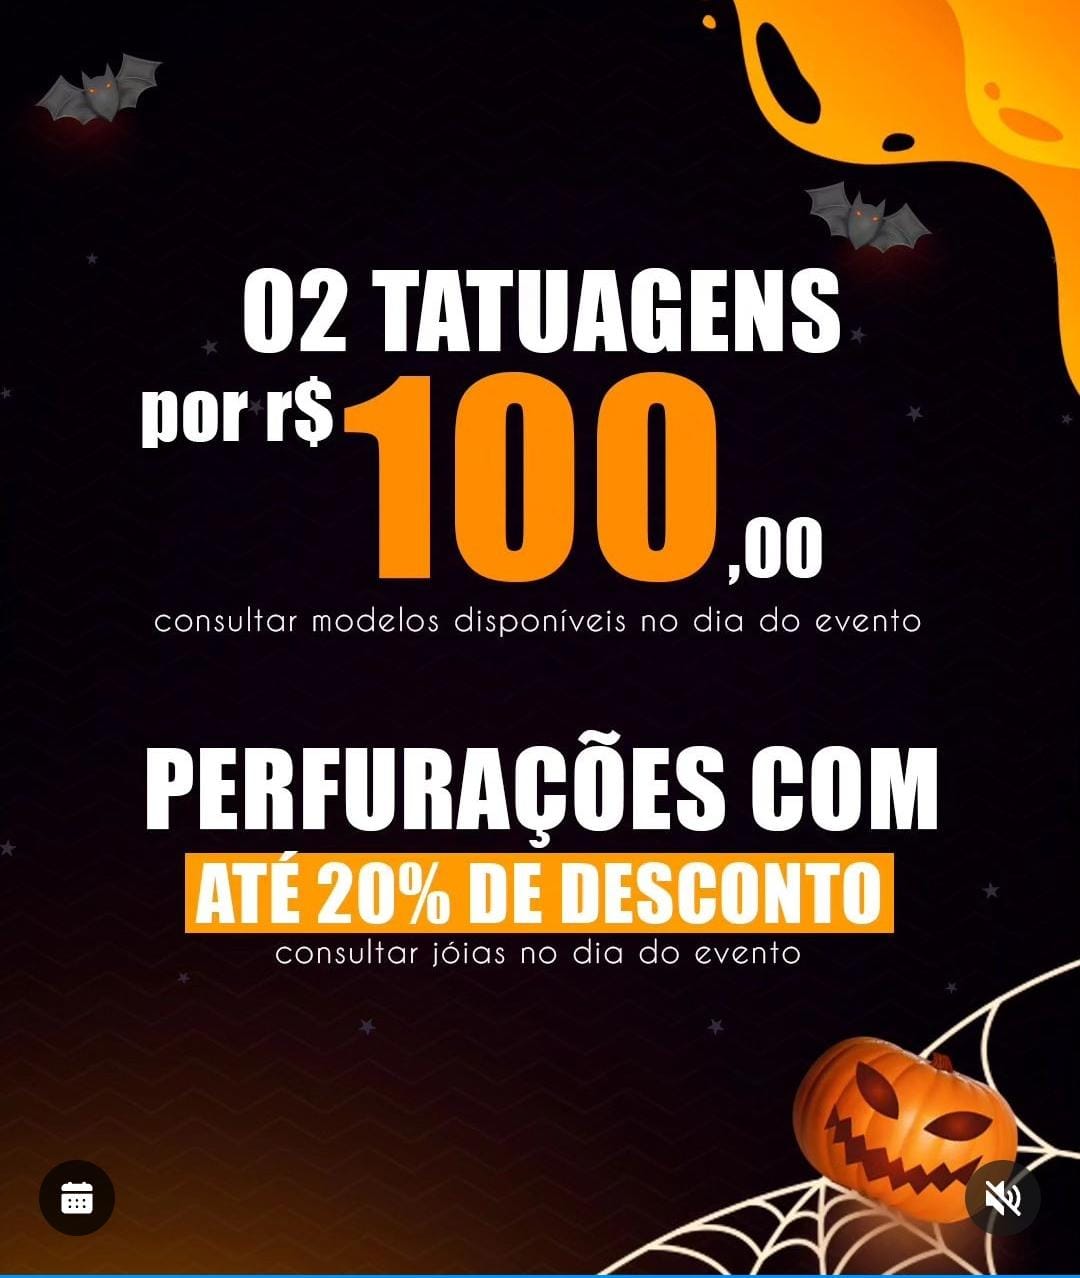 Agenda News: Halloween Madeira Ink será em novembro, por Renata Camurça